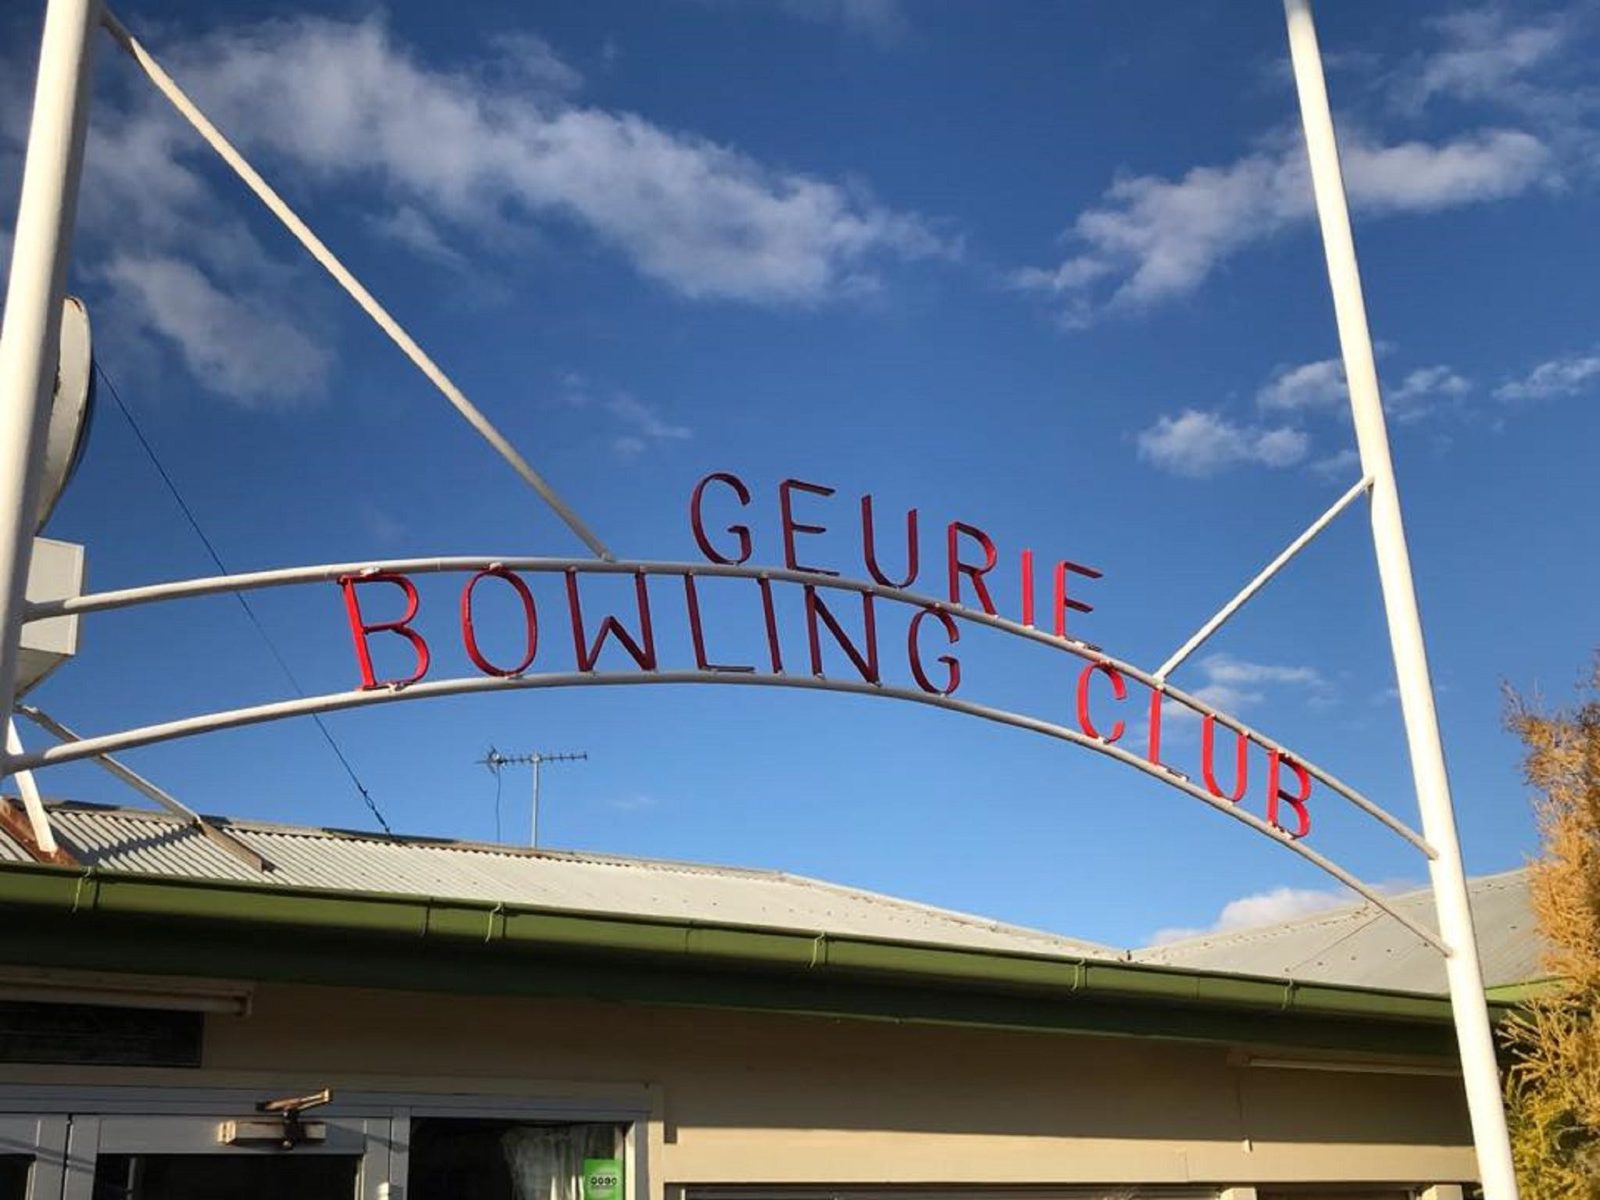 Geurie Bowling Club